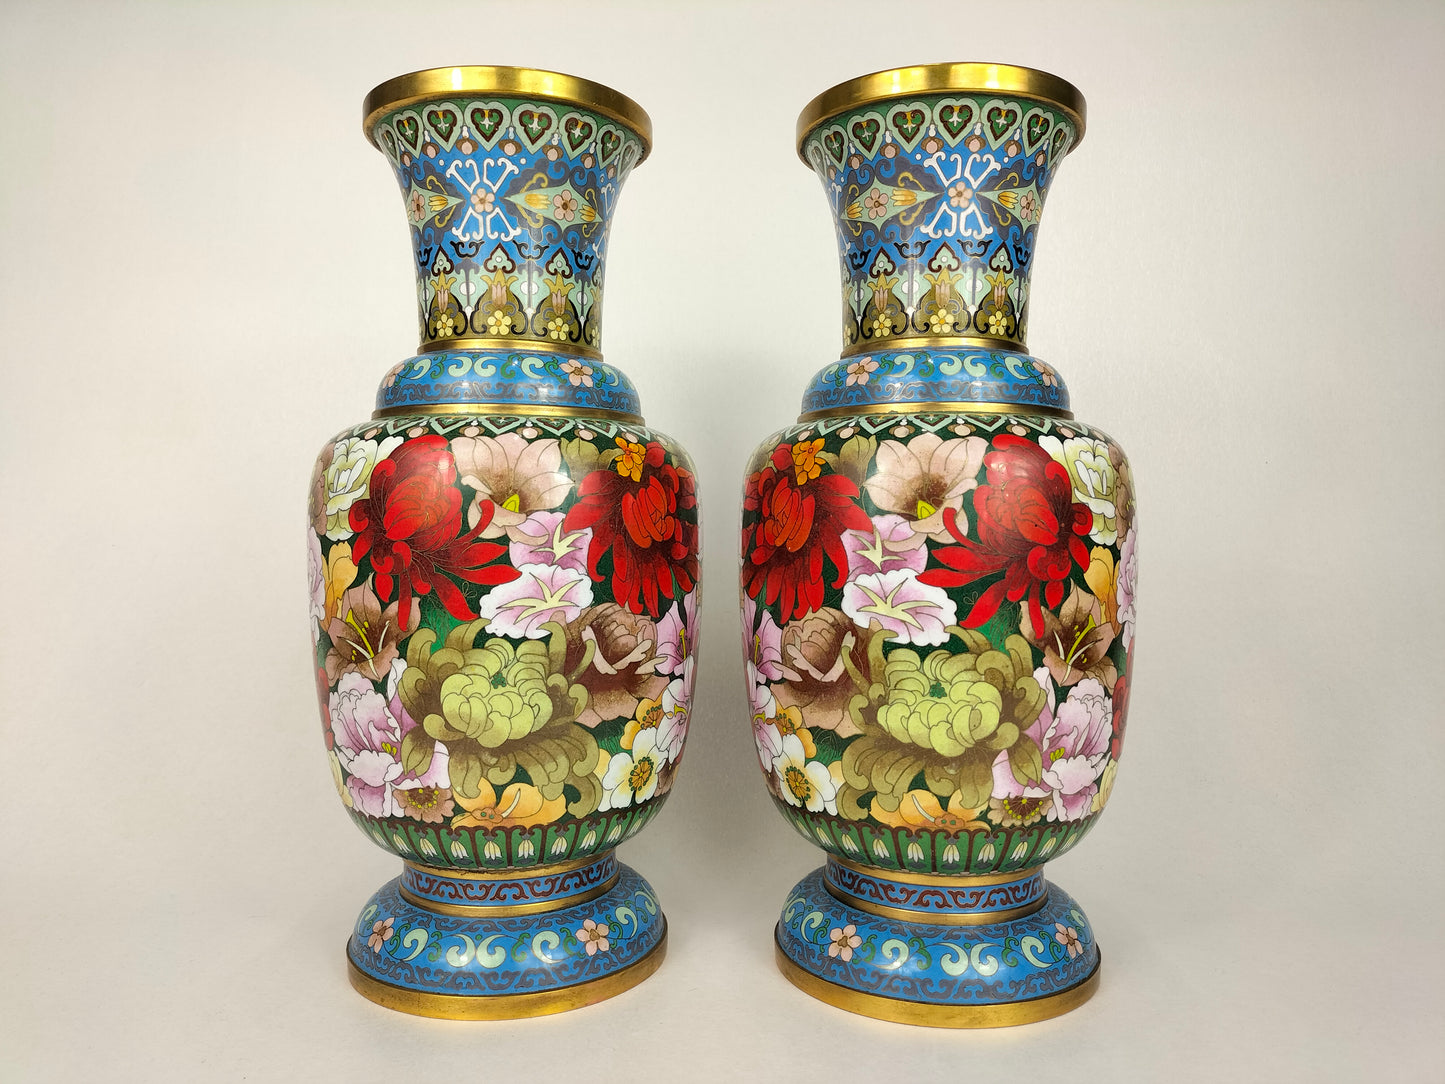 Grande par de vasos cloisonne millefleur chineses // século XX